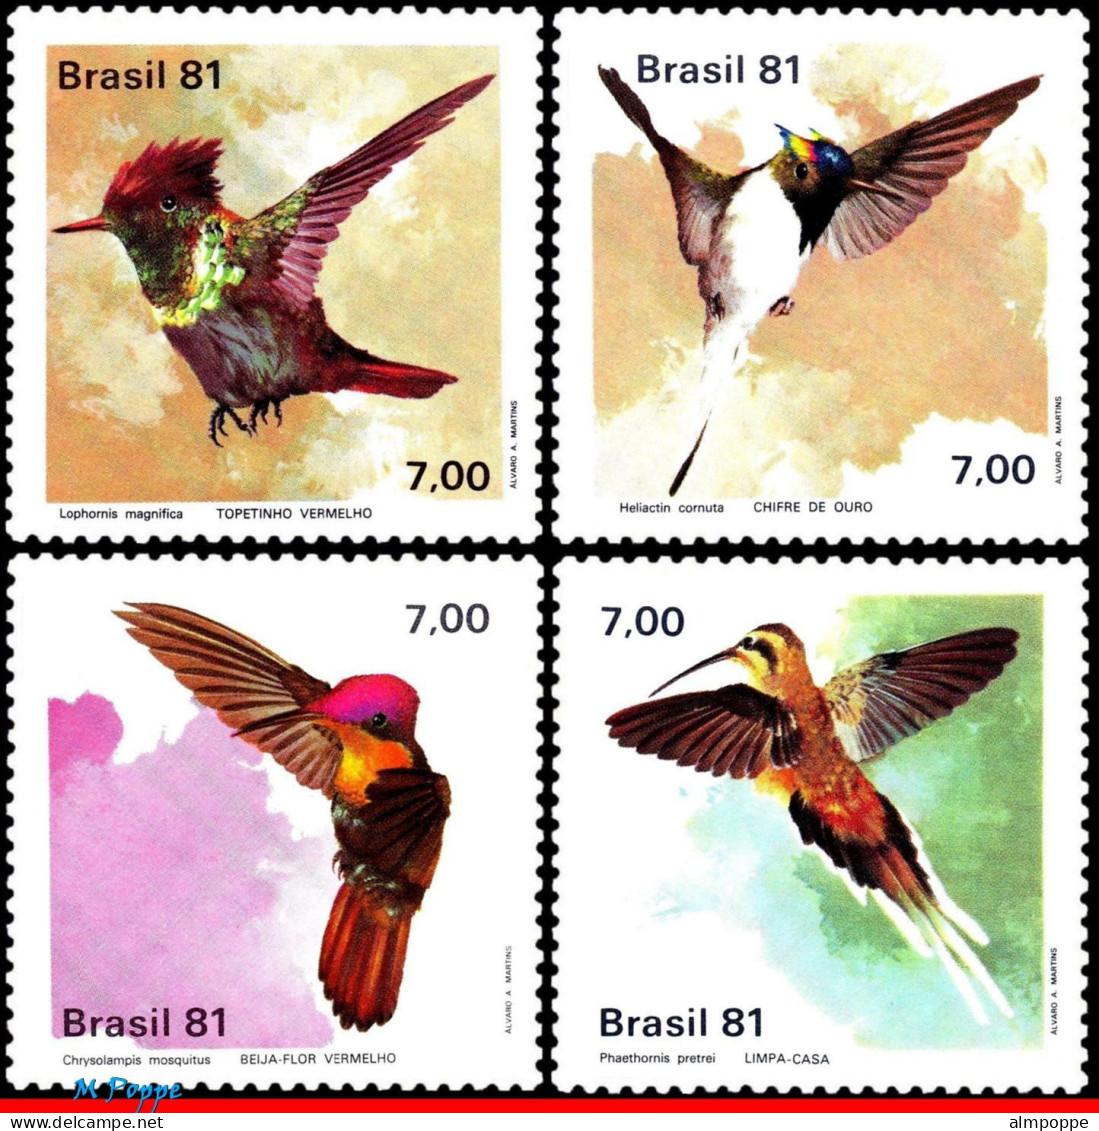 Ref. BR-1739-42 BRAZIL 1981 - HUMMINGBIRDS, ANIMALS &FAUNA, MI# 1823-26, SET MNH, BIRDS 4V Sc# 1739-1742 - Nuevos